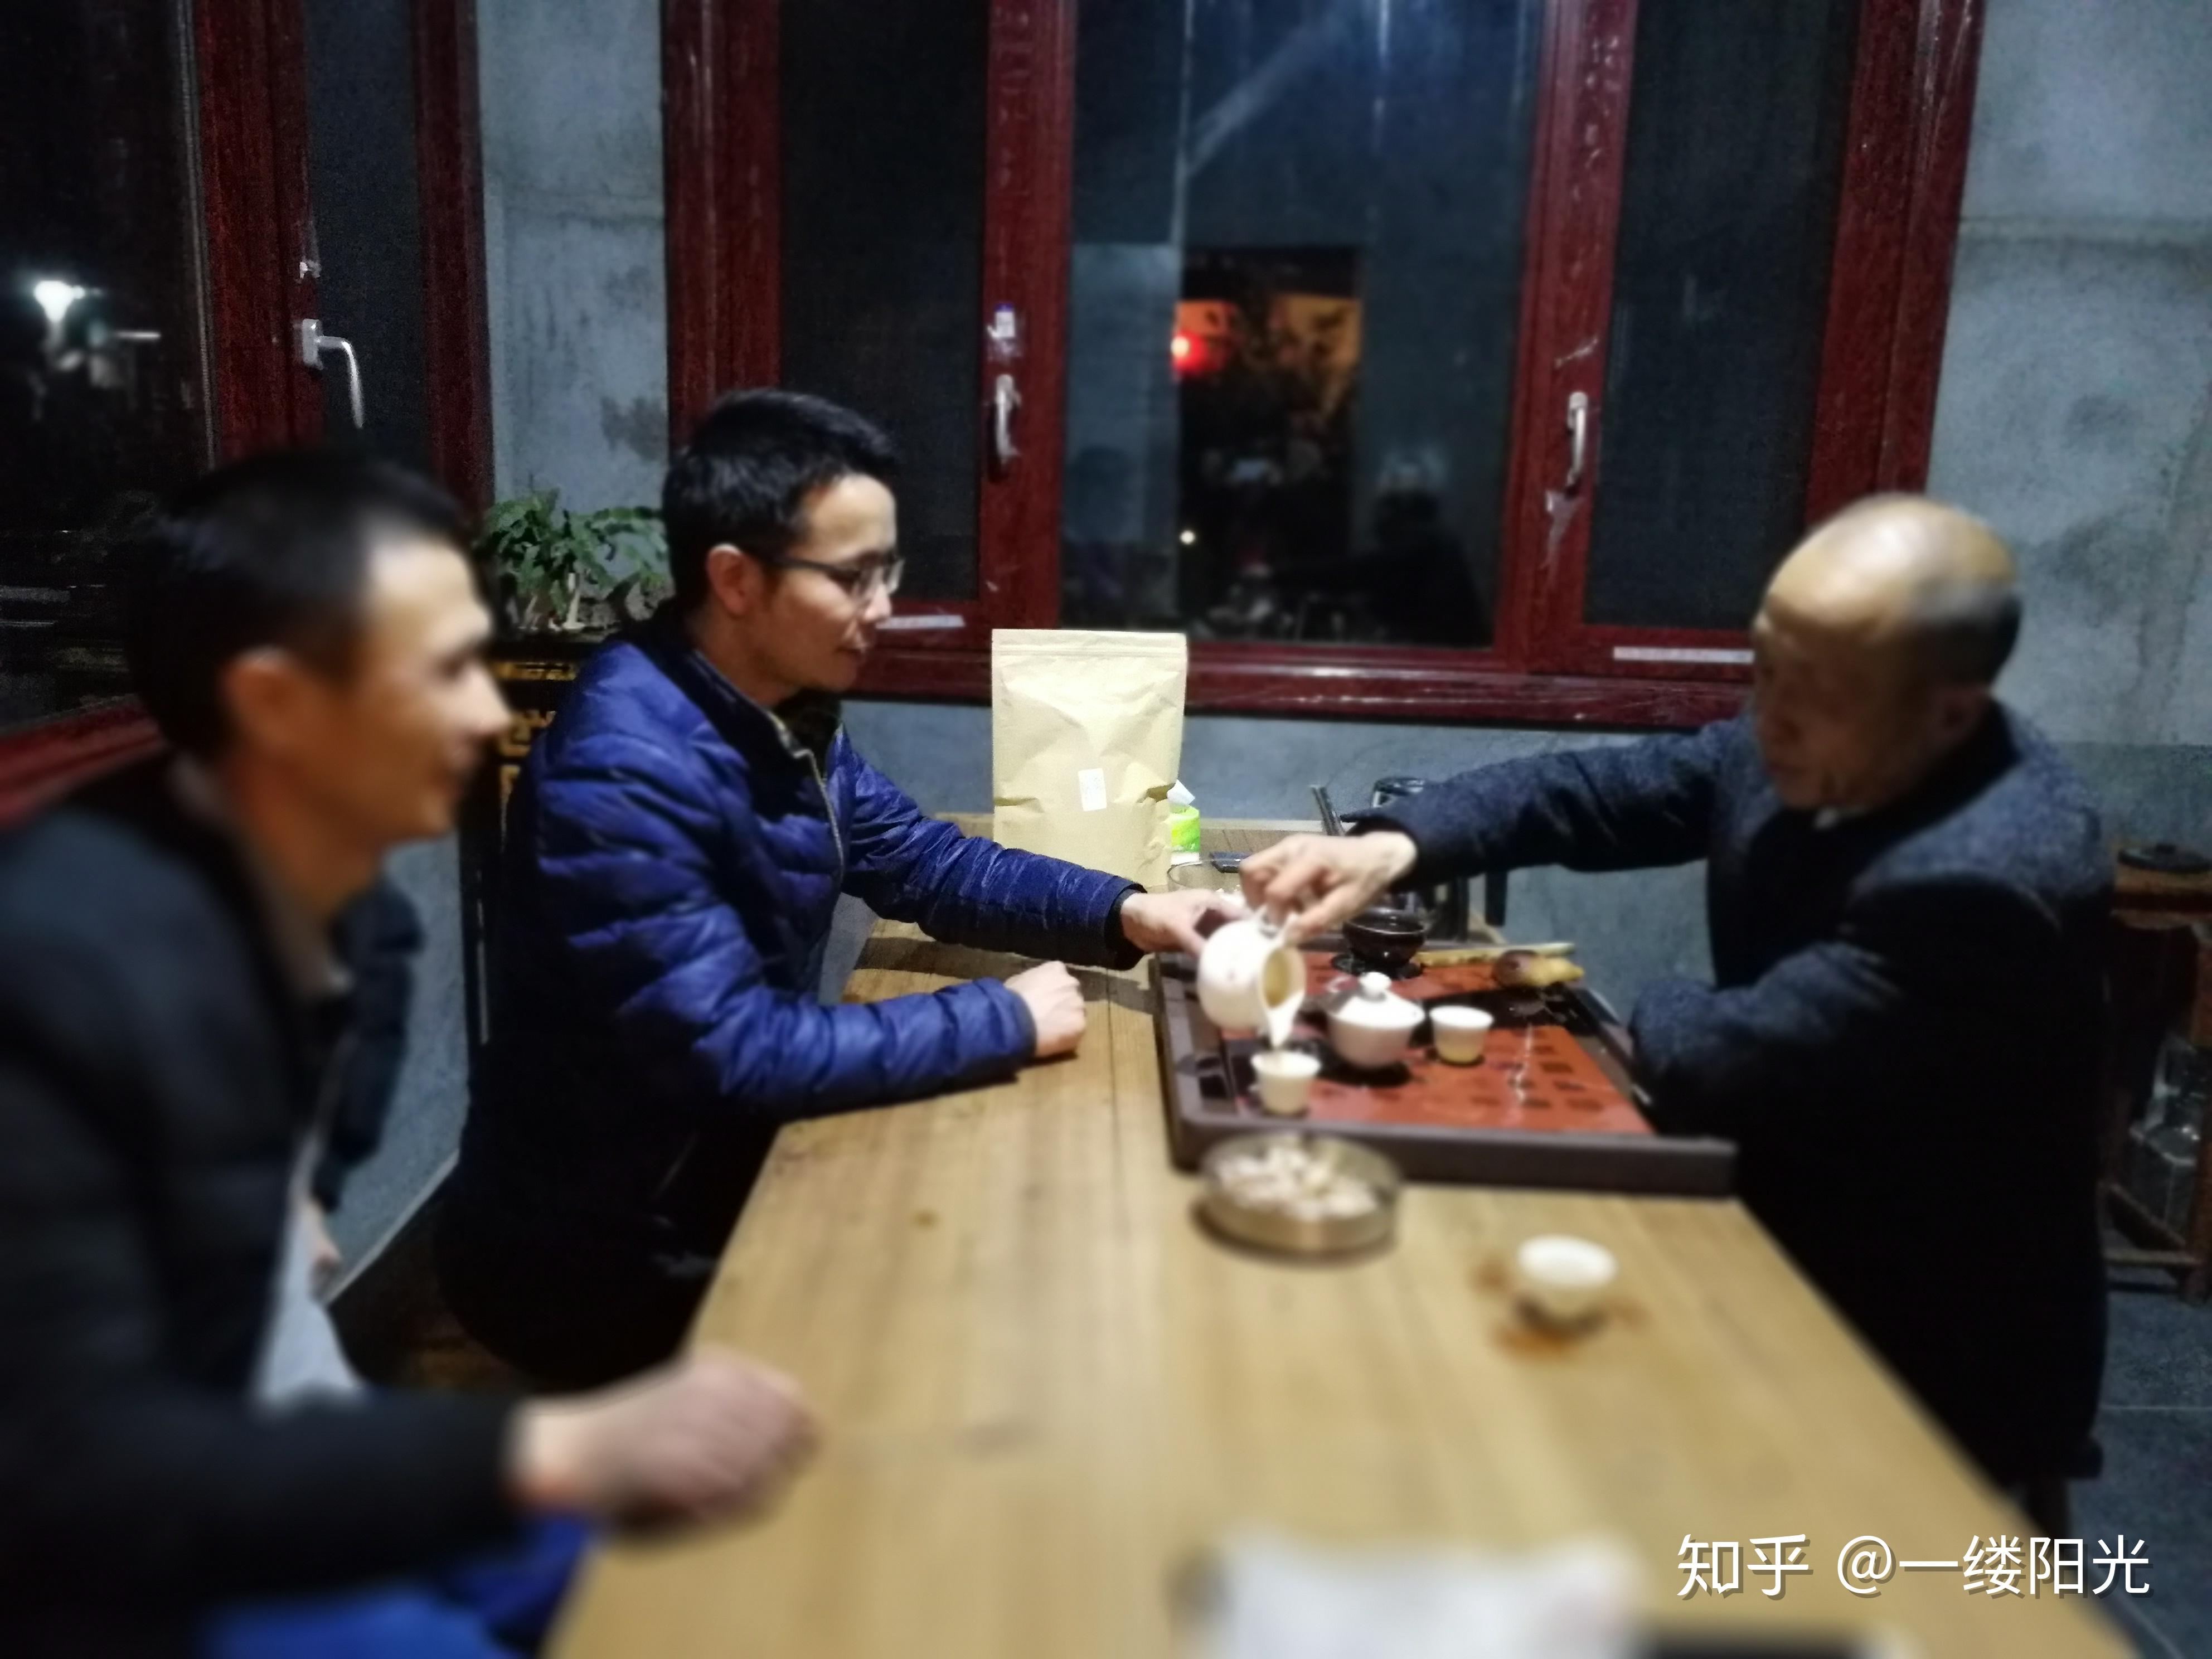 年轻人爱上茶文化内涵 “九十三度白茶”让喝茶流行起来 - 中国二手车城网